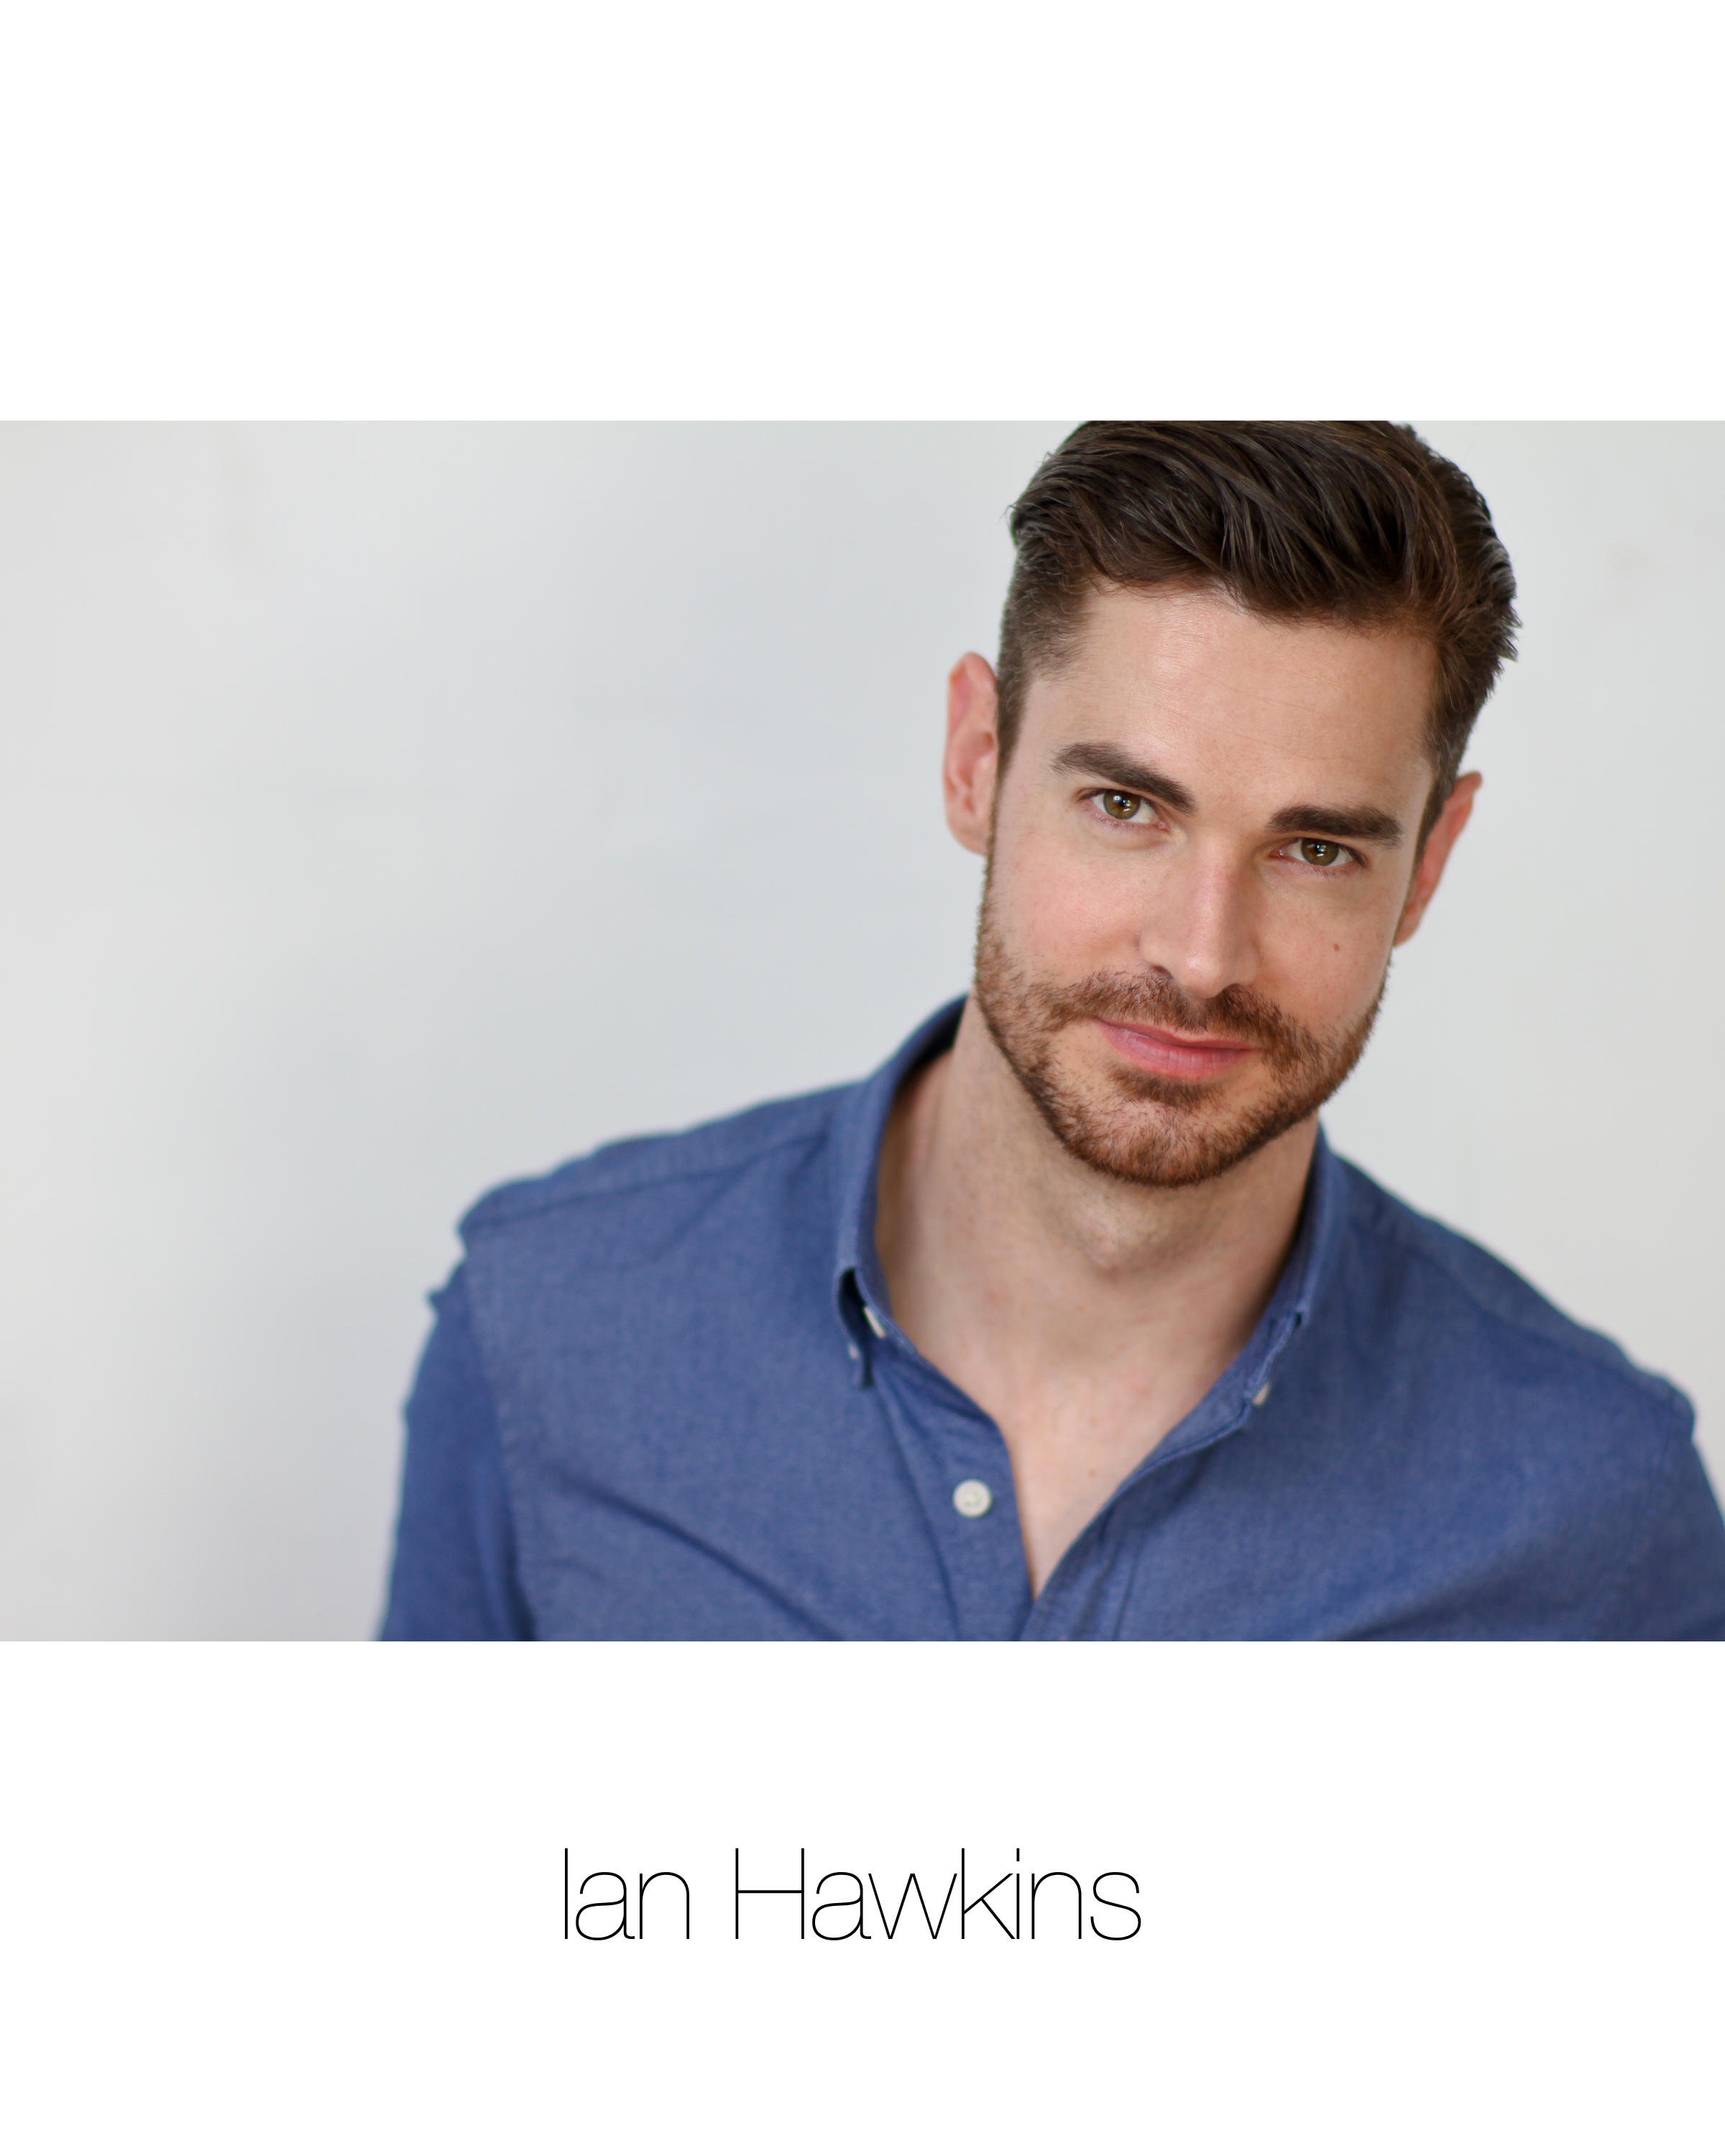 Ian James Hawkins